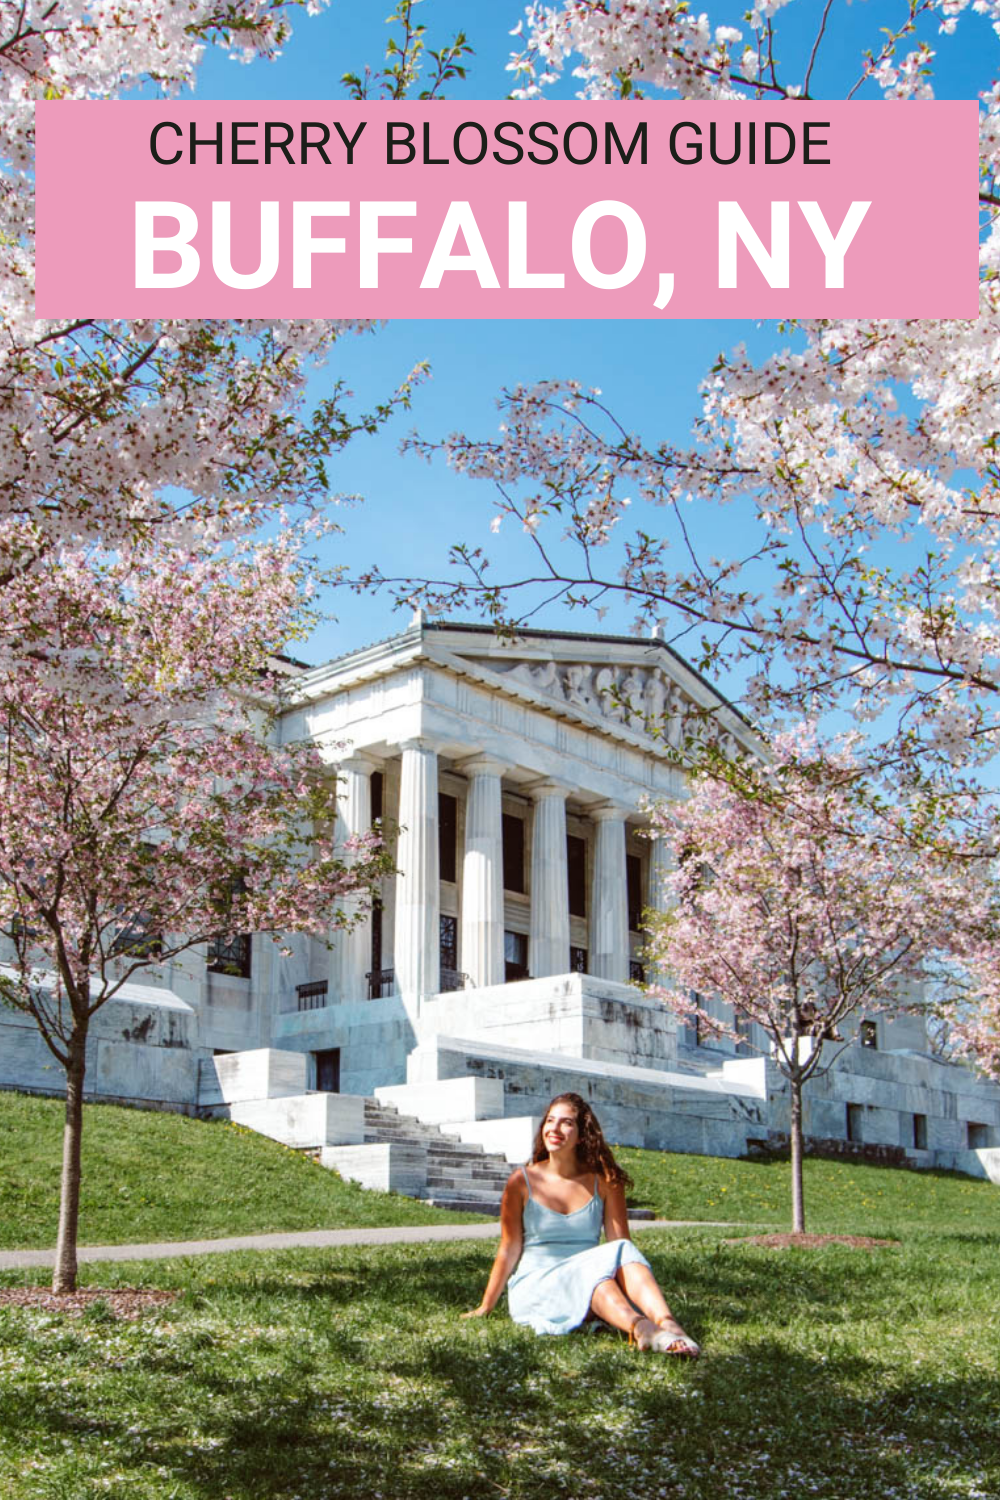 Cherry Blossoms in Buffalo NY